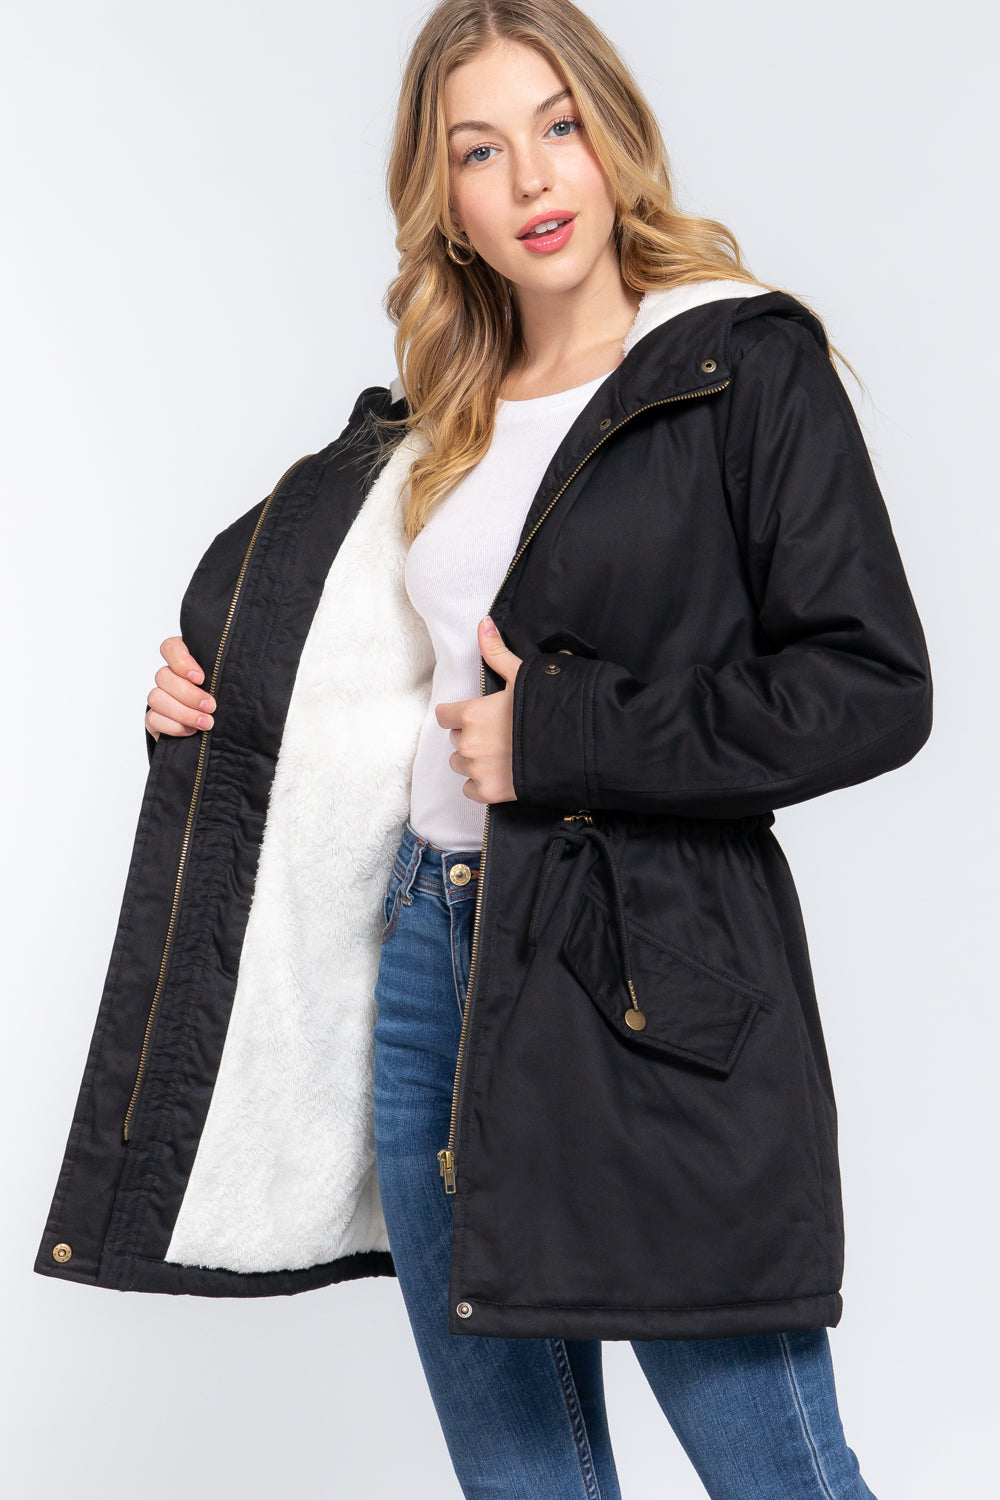 Fleece Lined Fur Hoodie Utility Jacket - JACKETS & OUTWEAR - Black